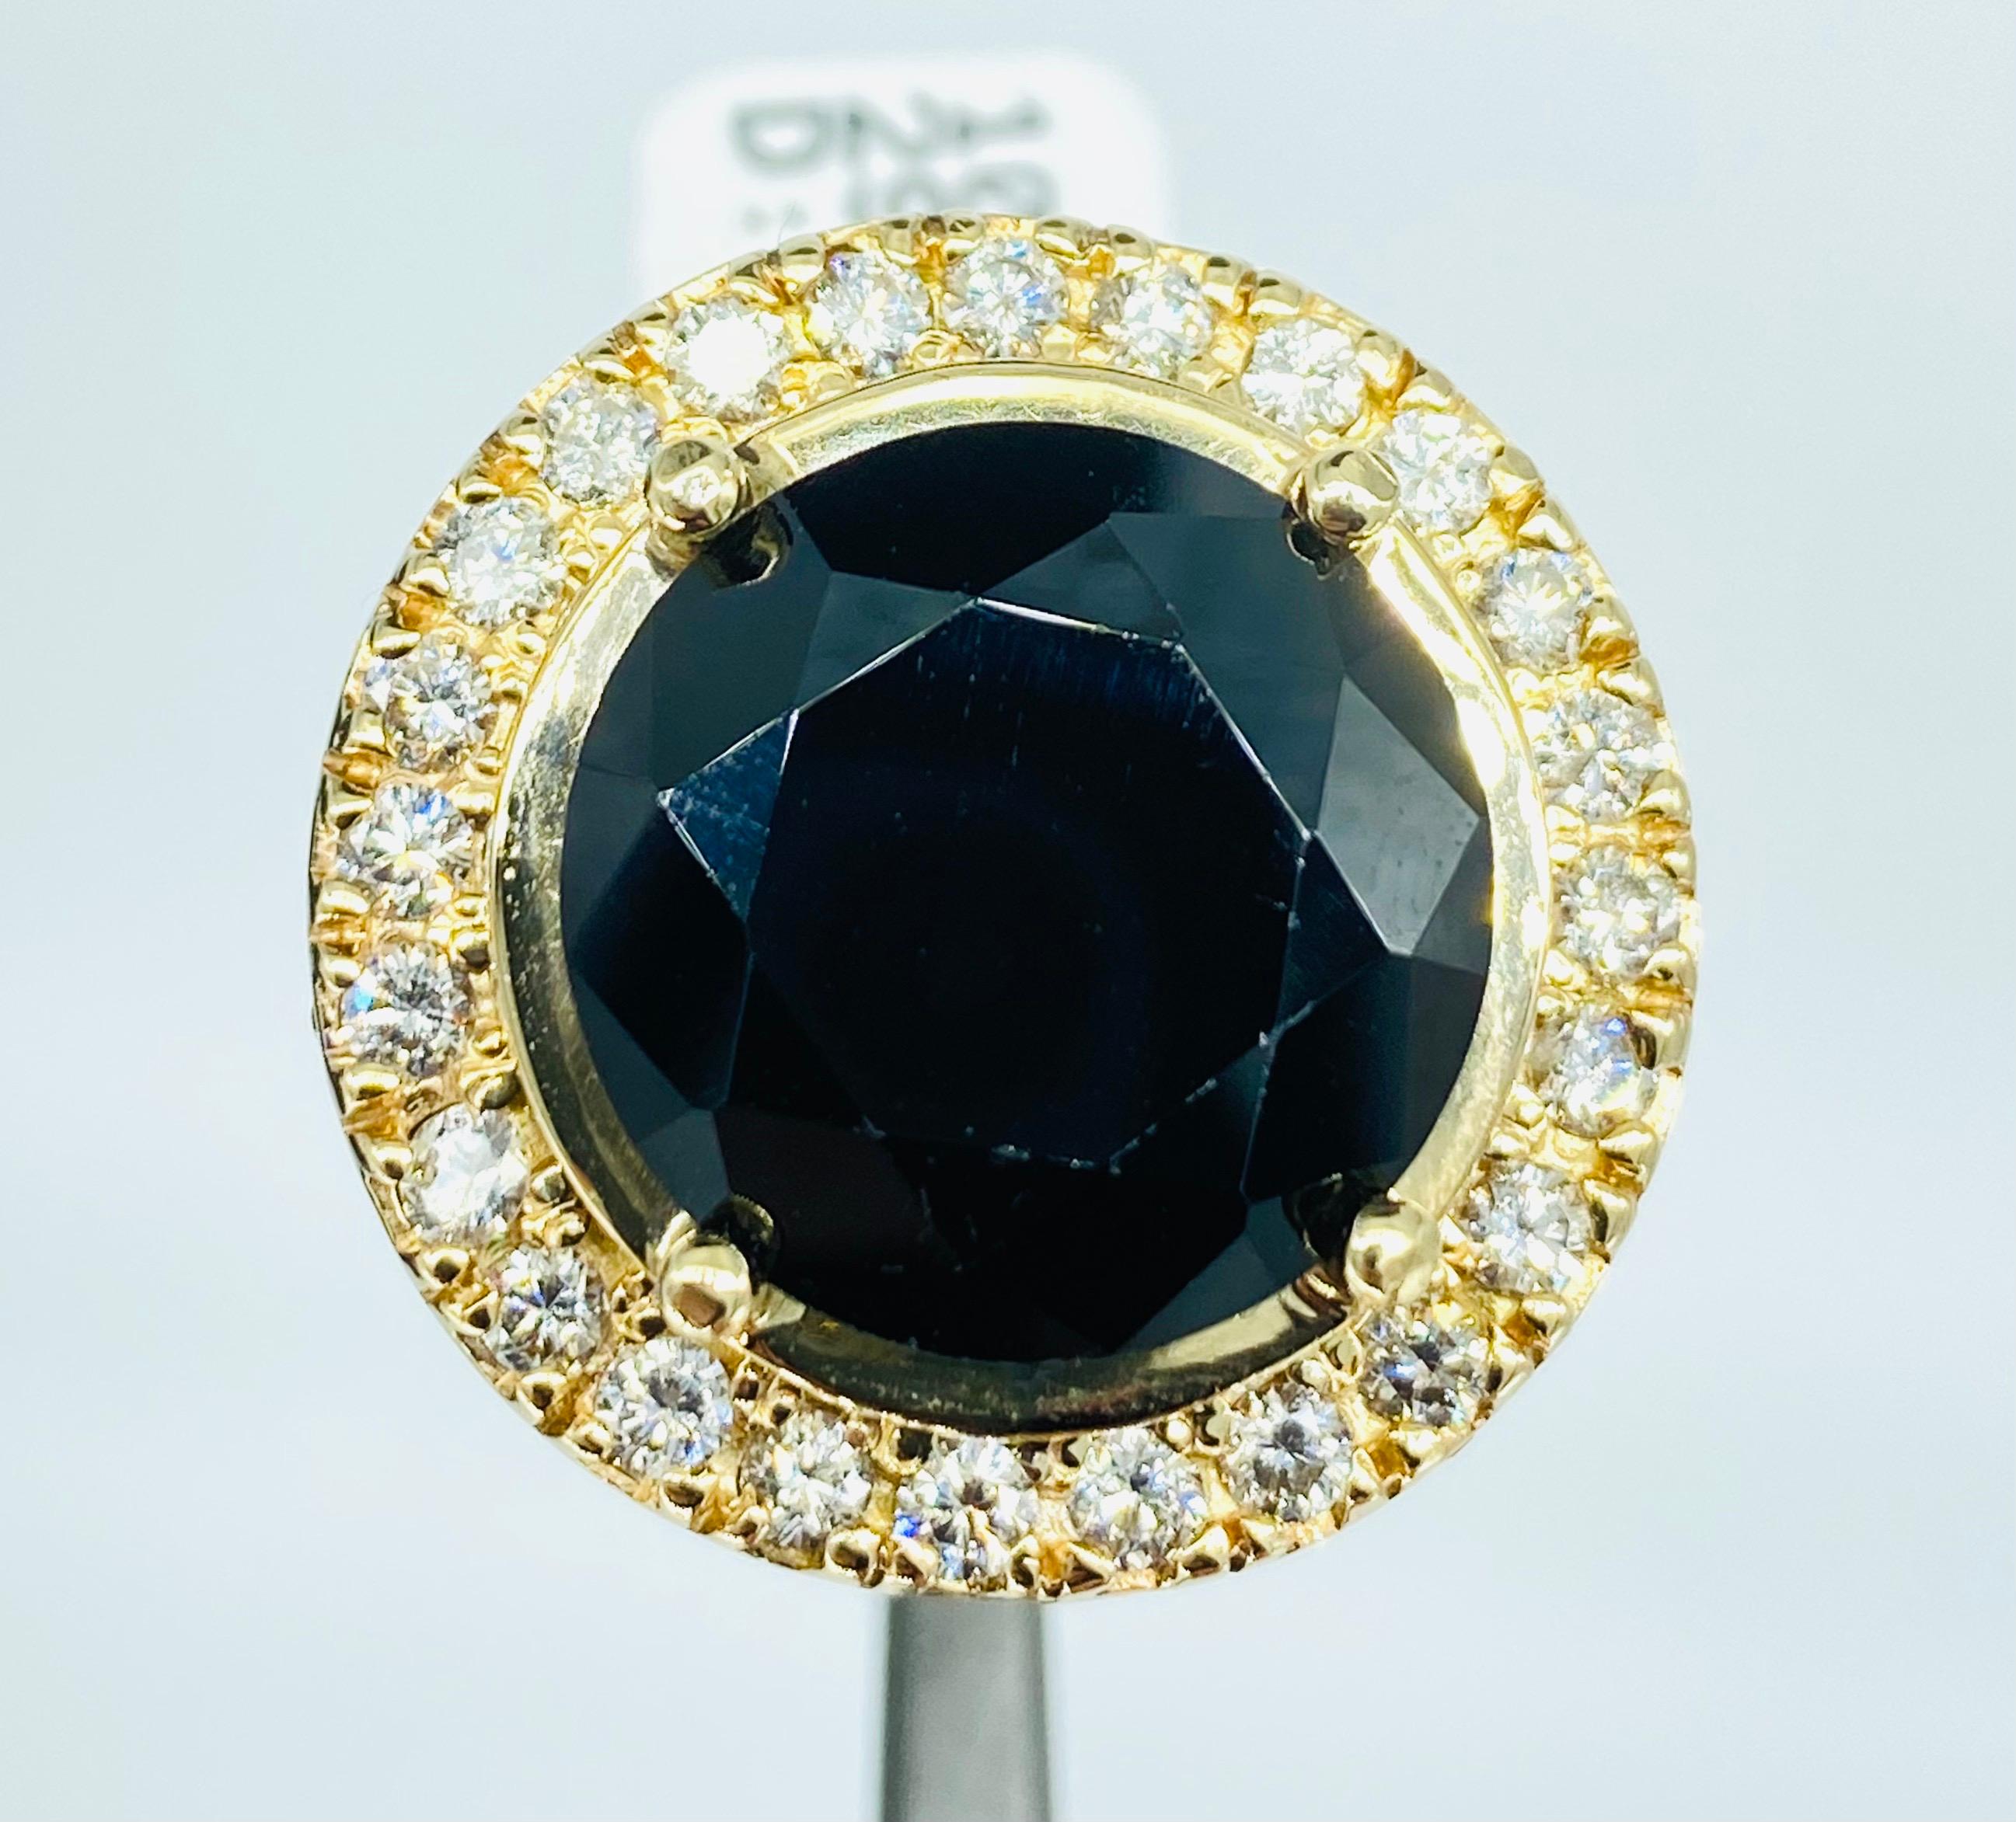 Bague homme 16.25mm Onyx noir 4.00 carats Diamants BIGLI. 
La bague mesure 25,8 mm et est de taille 12,5.
La bague est très grande et comporte environ 4,00 carats de diamants. 